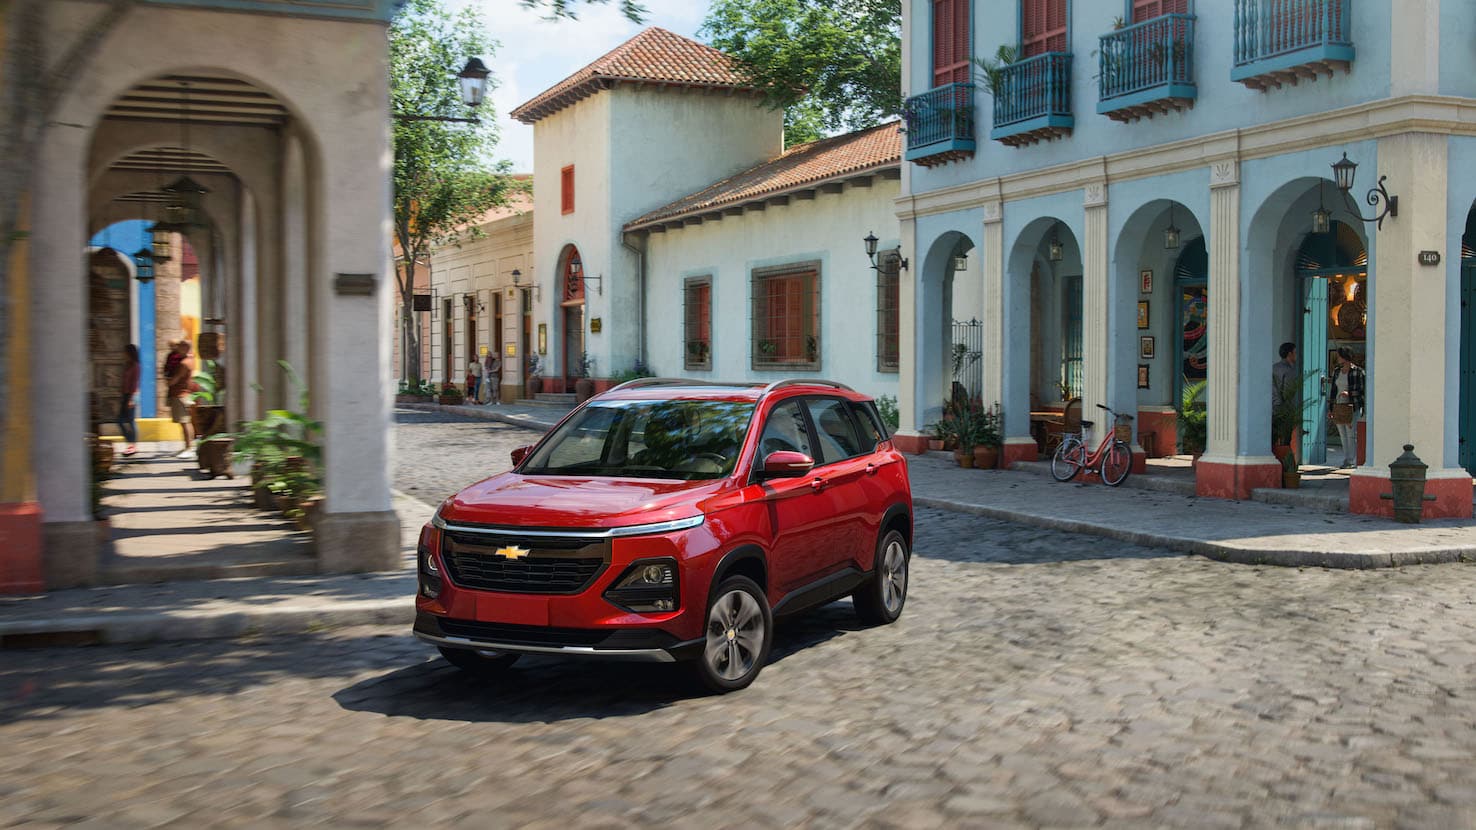 Llega en abril: nueva Chevrolet Captiva 2022 se enfoca en valor